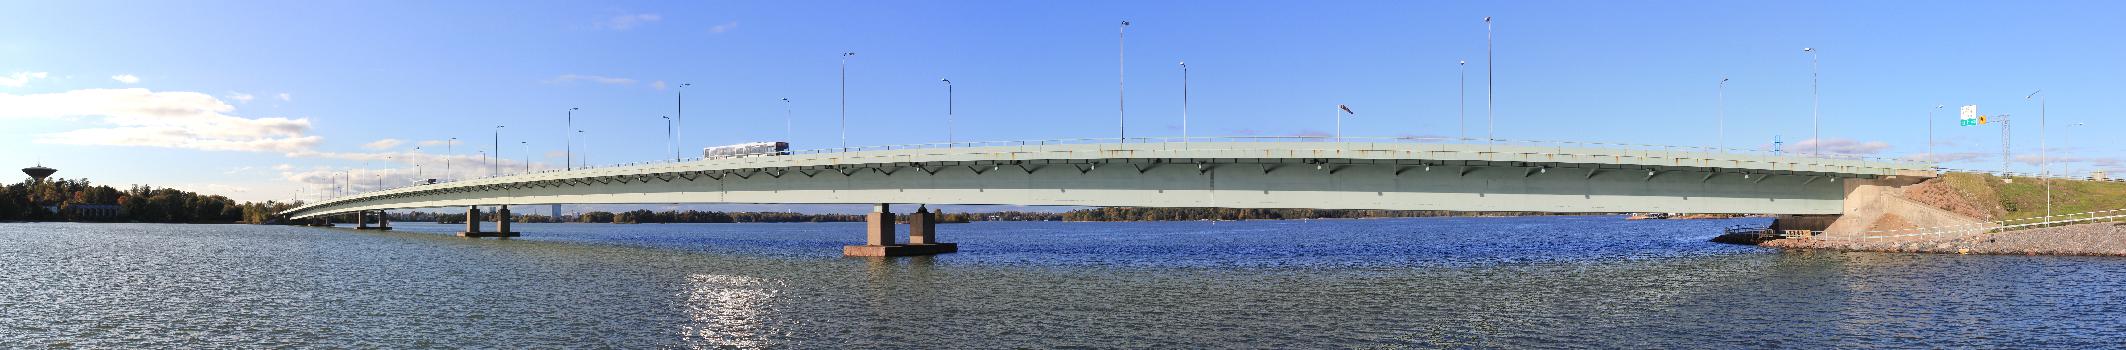 Panorama of Lapinlahti bridge